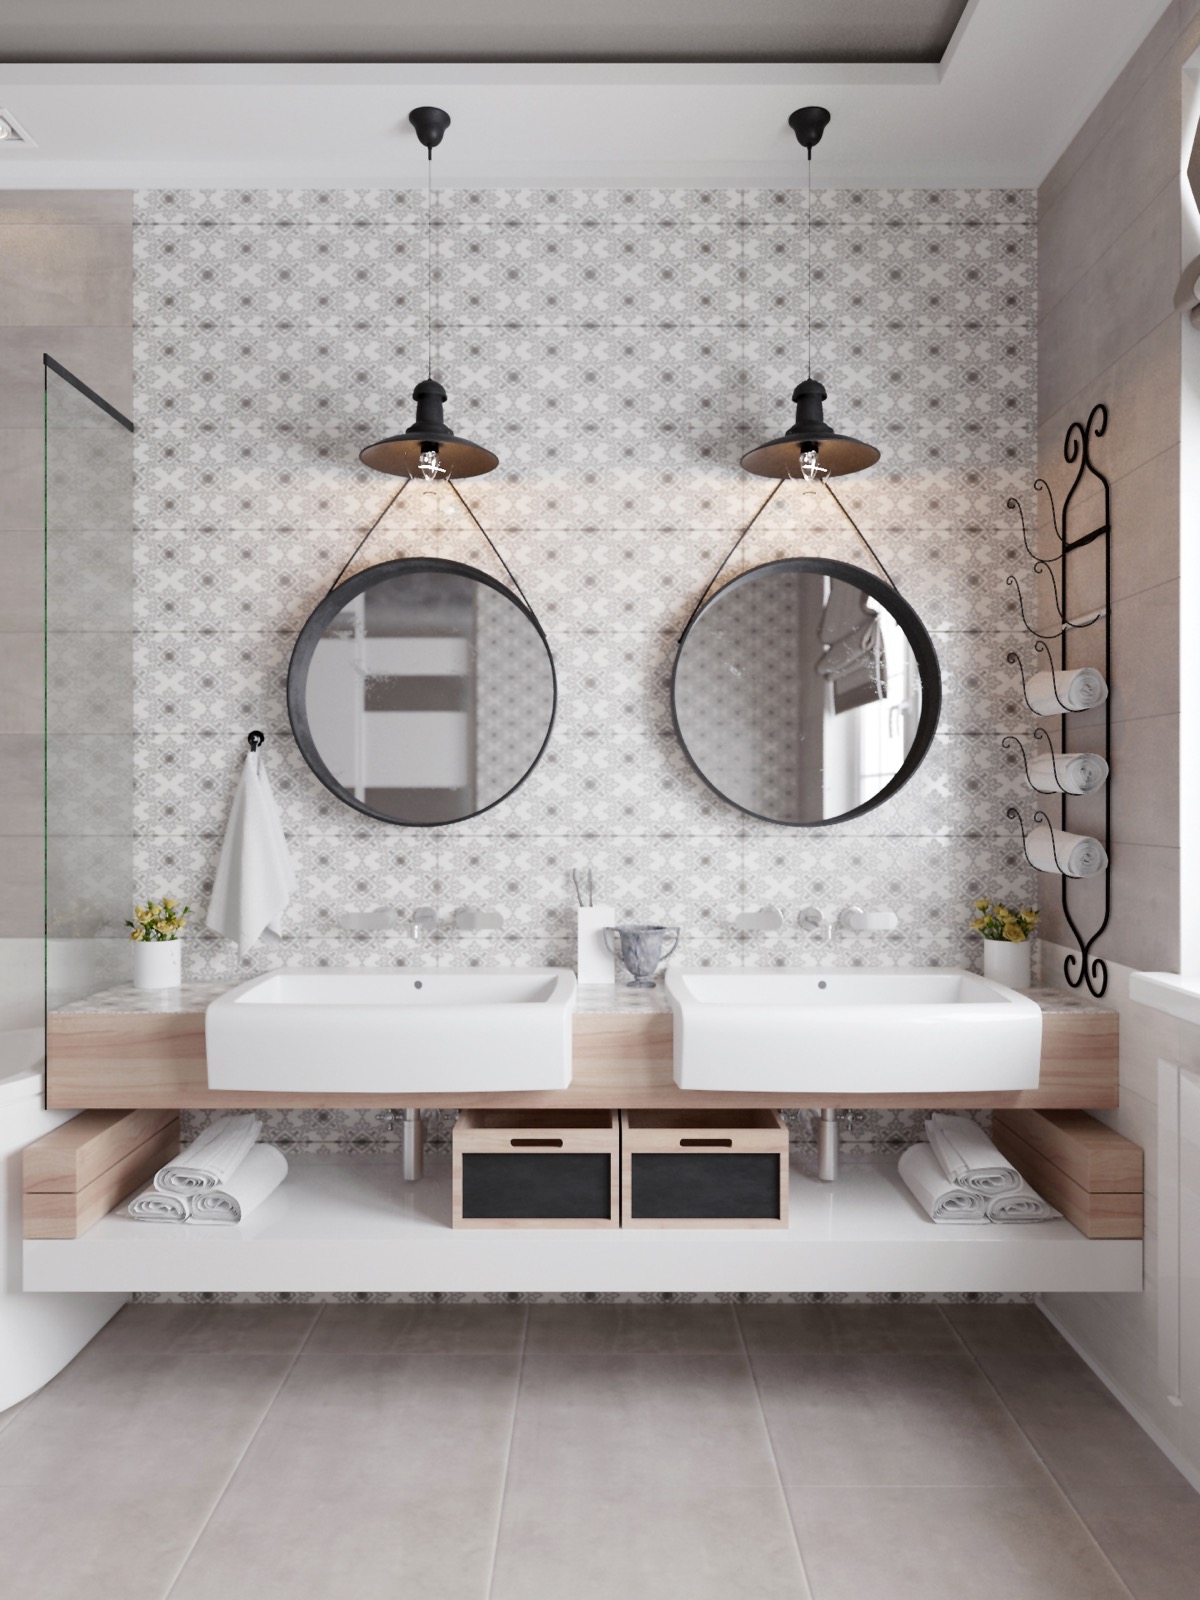 40 Double Sink Bathroom Vanities - Double Vanity Bathroom Layout